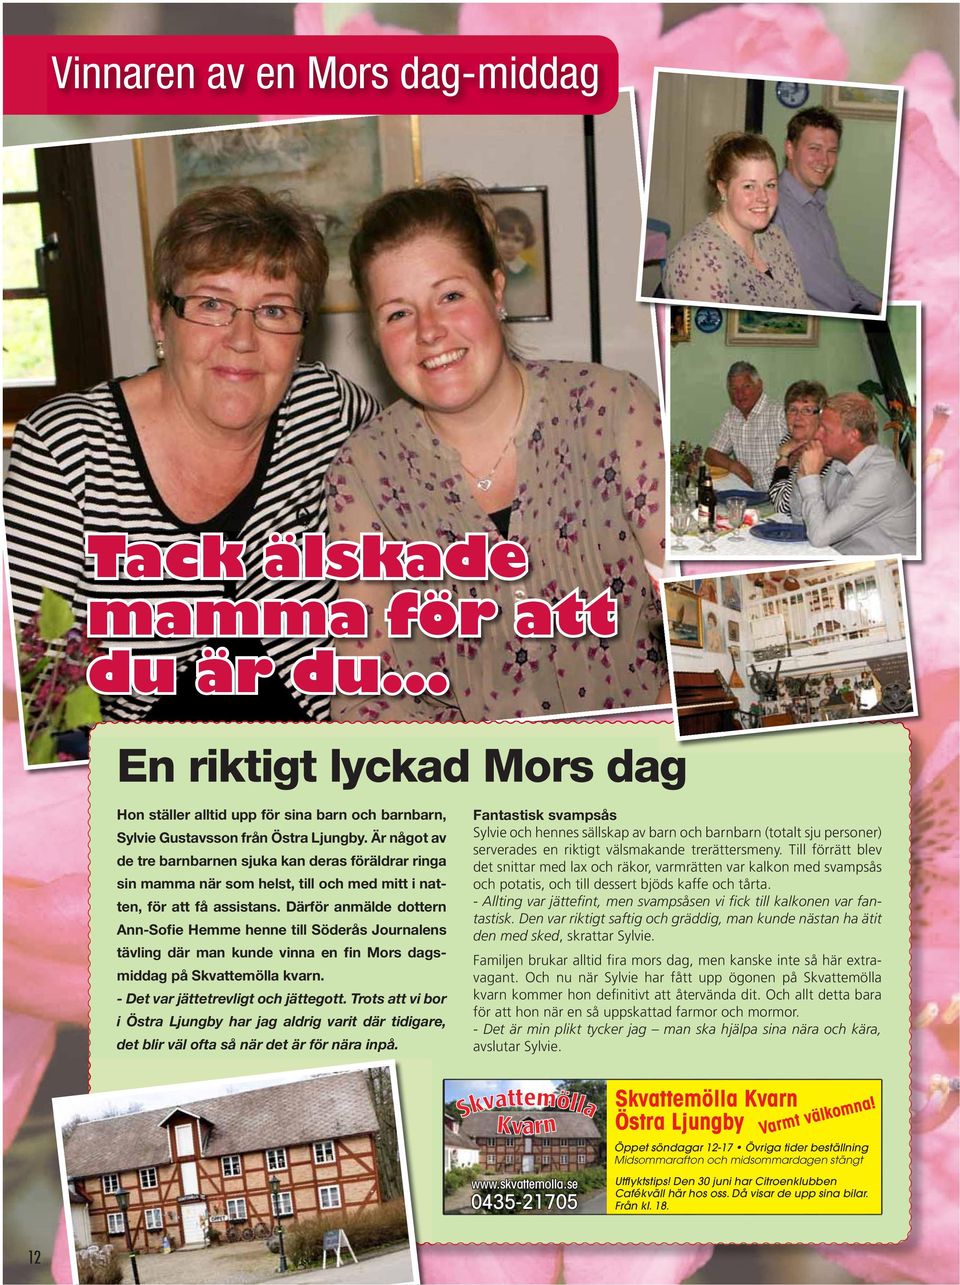 Därför anmälde dottern Ann-Sofie Hemme henne till Söderås Journalens tävling där man kunde vinna en fin Mors dagsmiddag på Skvattemölla kvarn. - Det var jättetrevligt och jättegott.